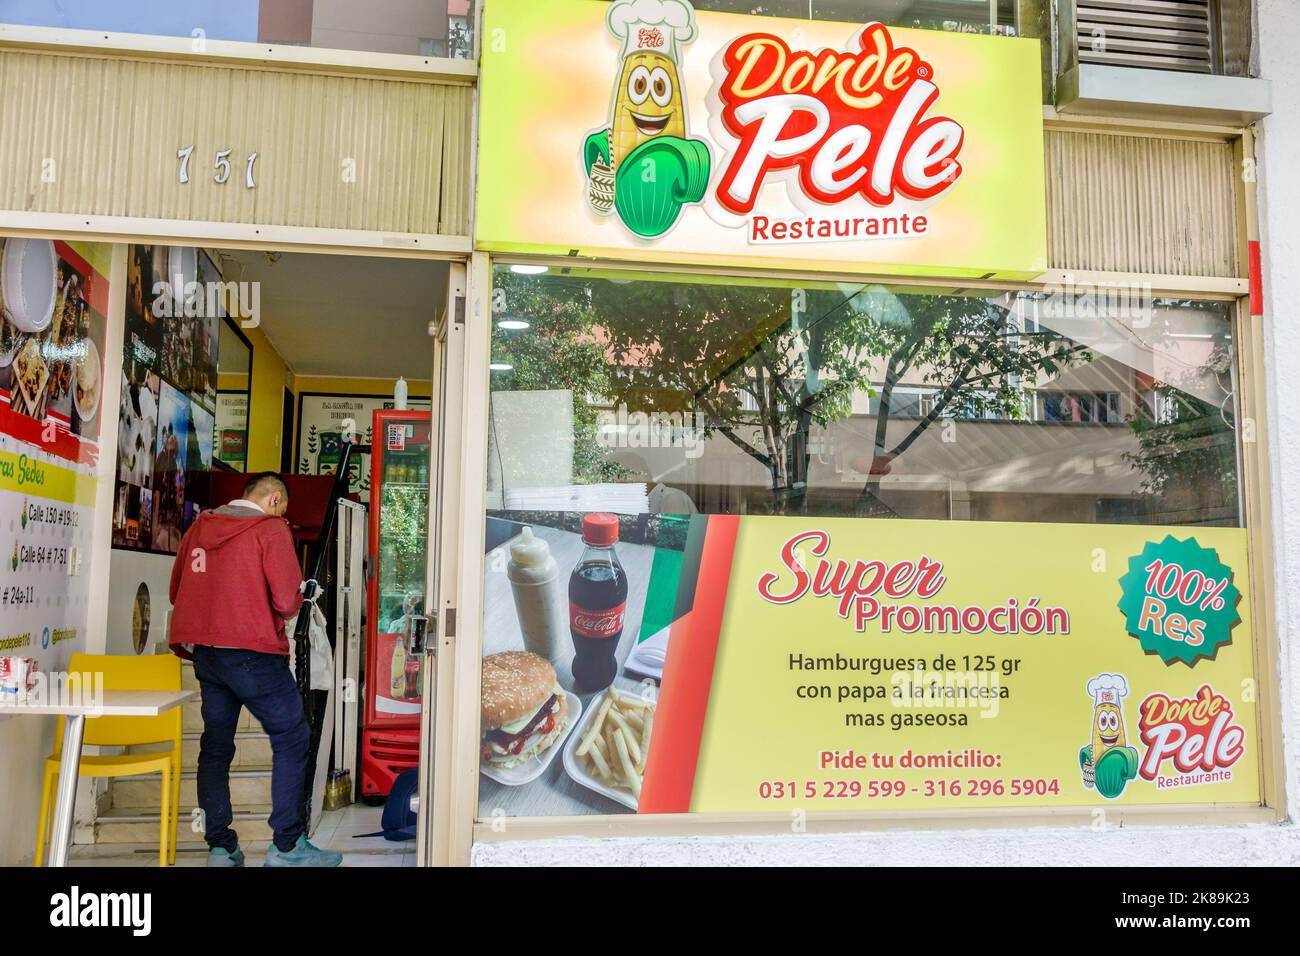 Bogota Colombia, Chapinero Norte Calle 64, Donde Pele Ristorante ristoranti cena mangiare fuori informale caffè caffè caffè bistro bistro cibo, Sp Foto Stock